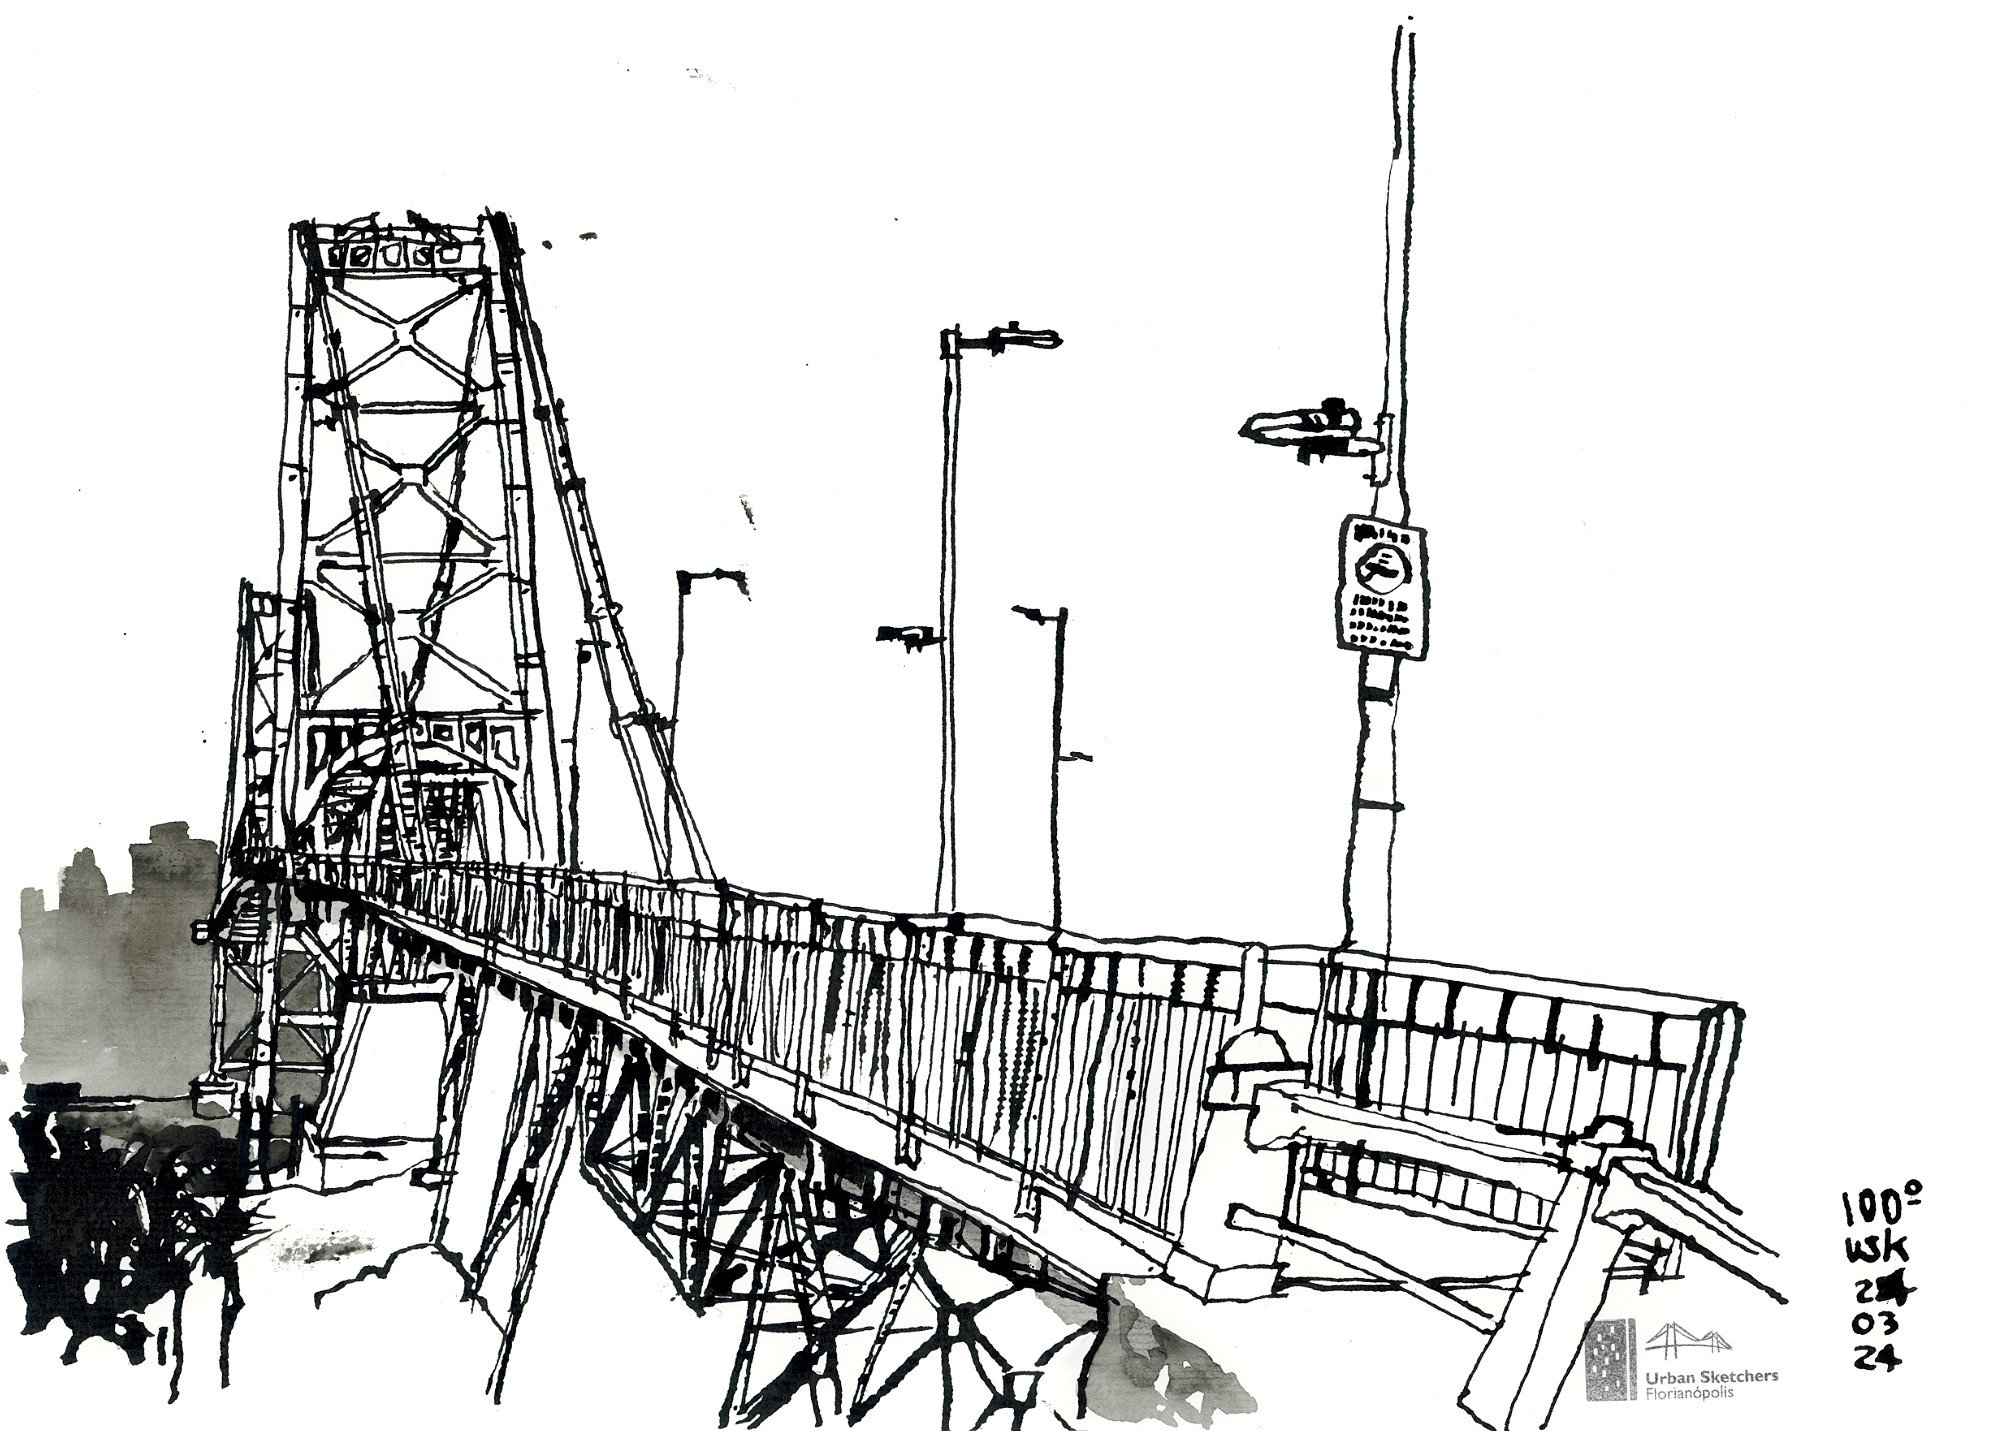 Desenho da ponte Hercílio Luz a partir do início da passarela de pedestres, mostrando as duas torres, os postes e, ao fundo, os prédios do continente em silhueta